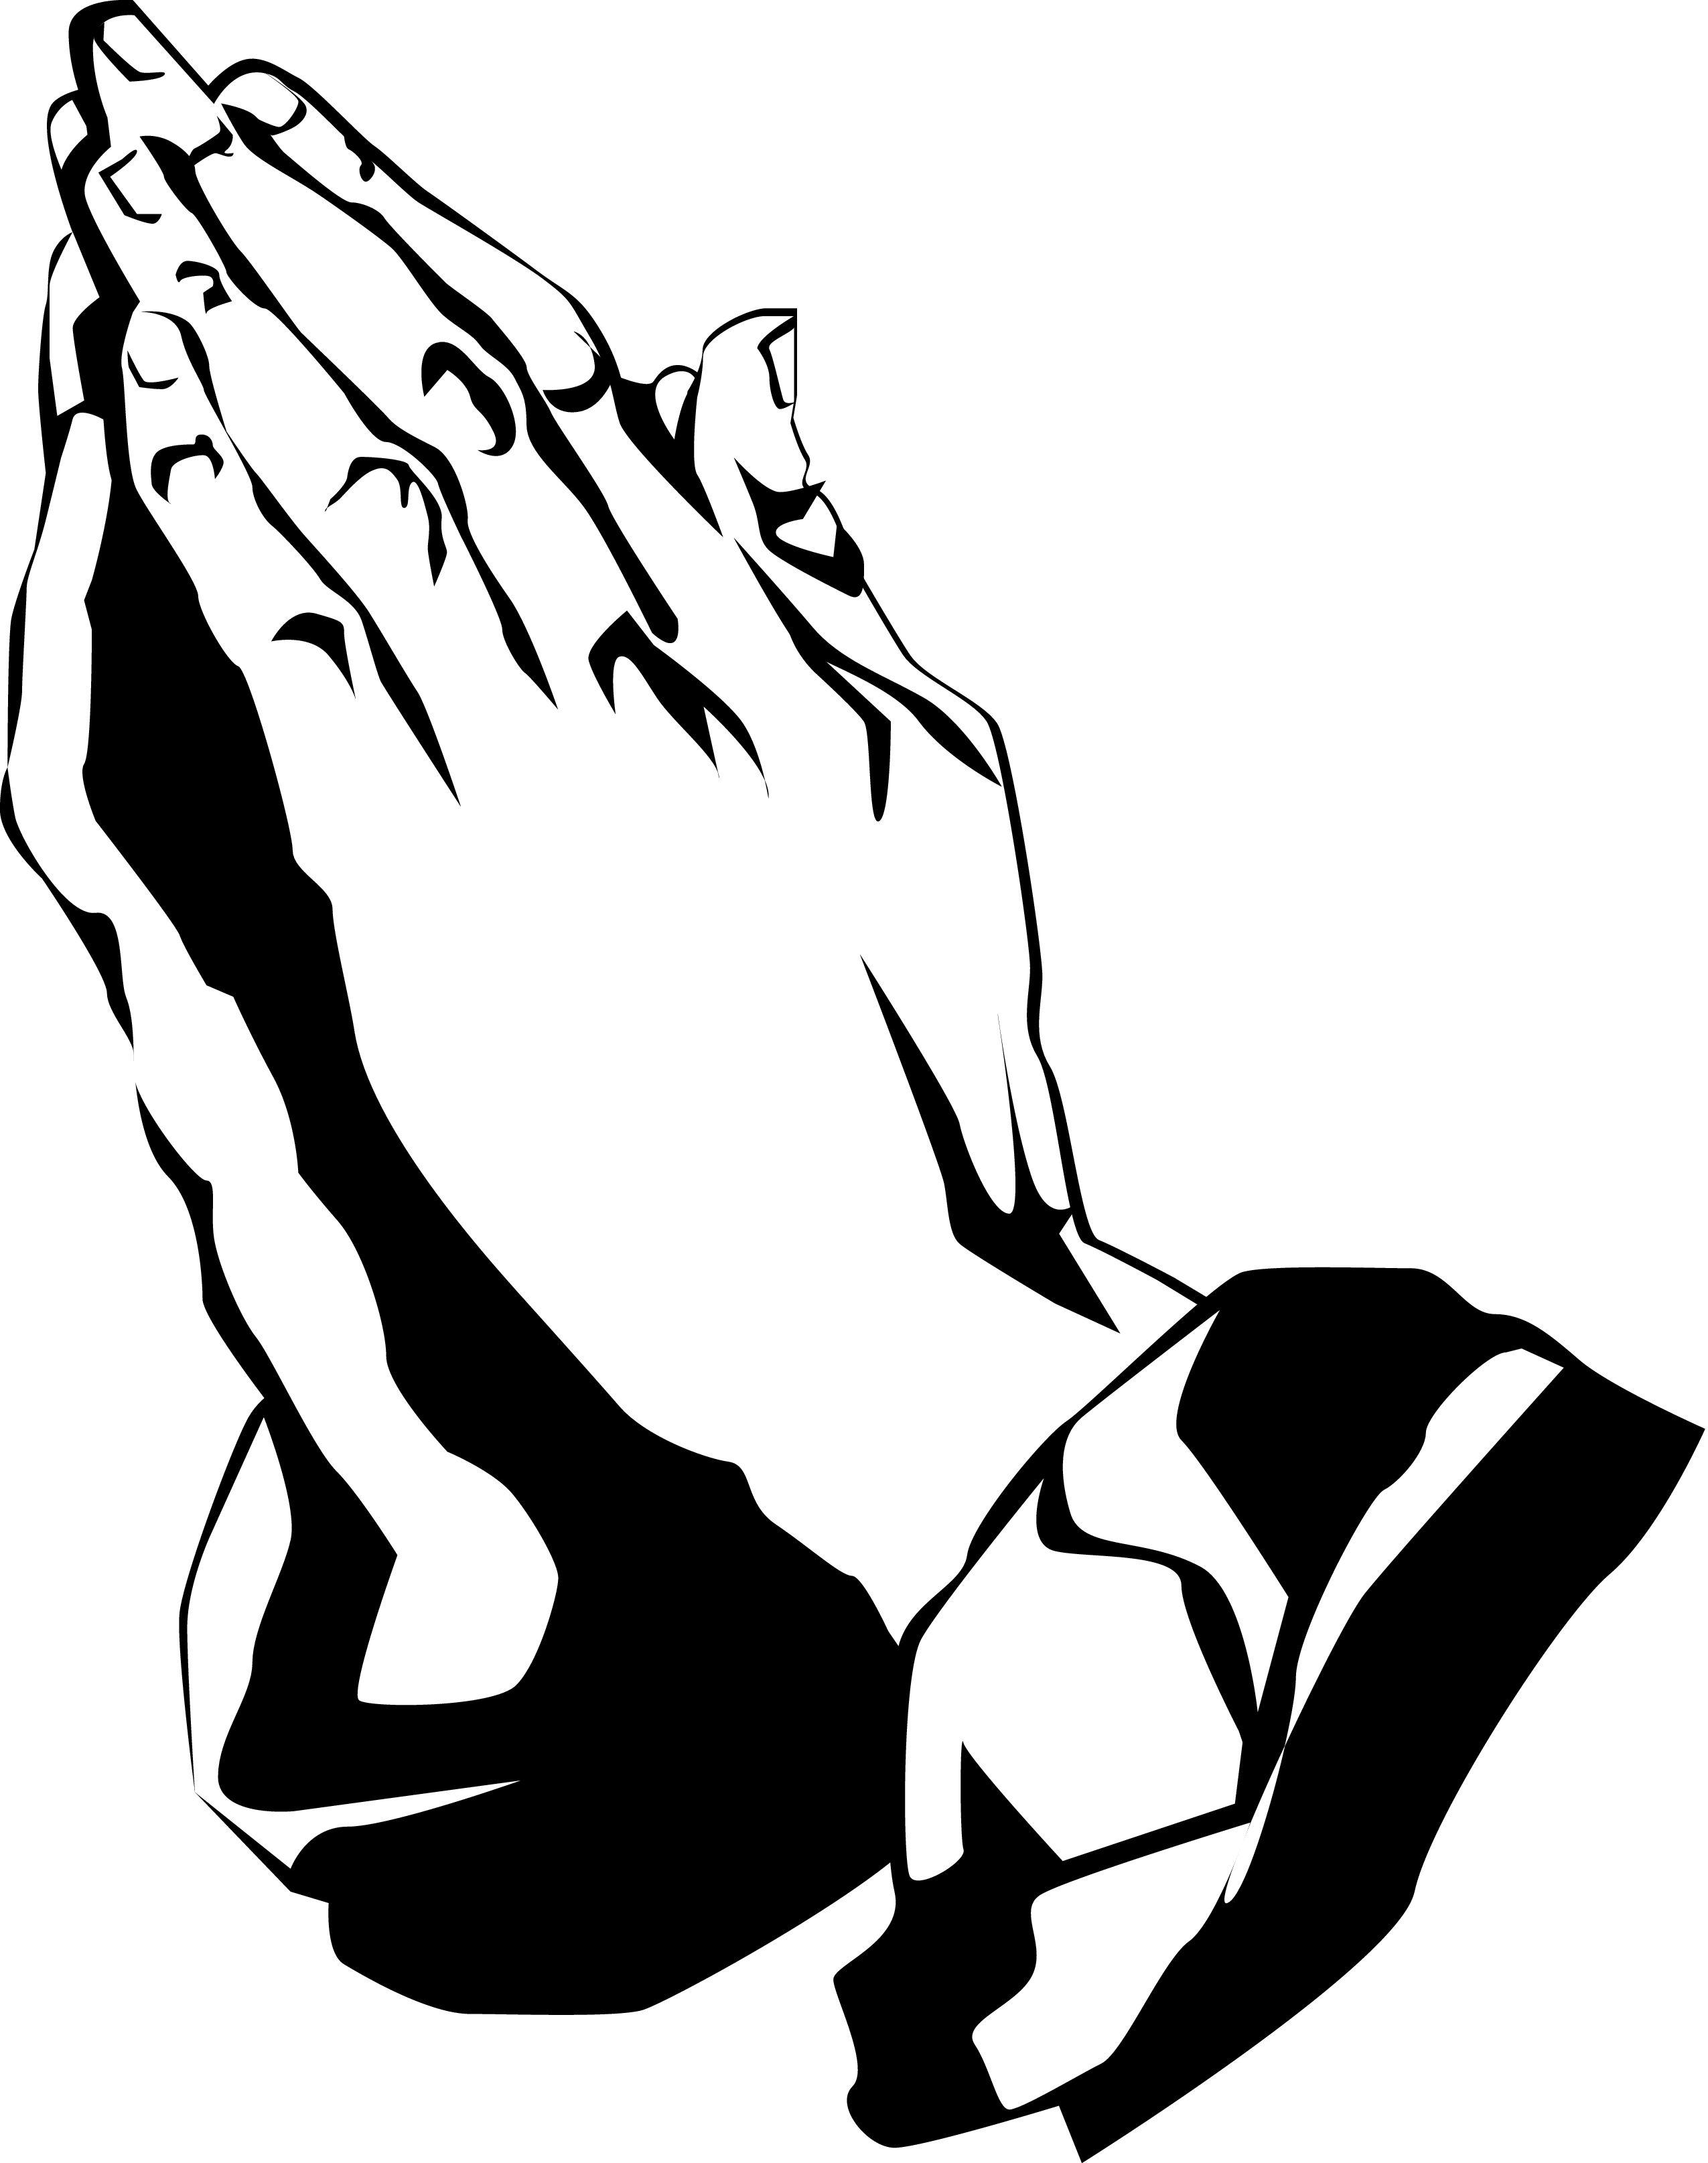 Drake Praying 6 God Wallpapers - Top Free Drake Praying 6 God ...